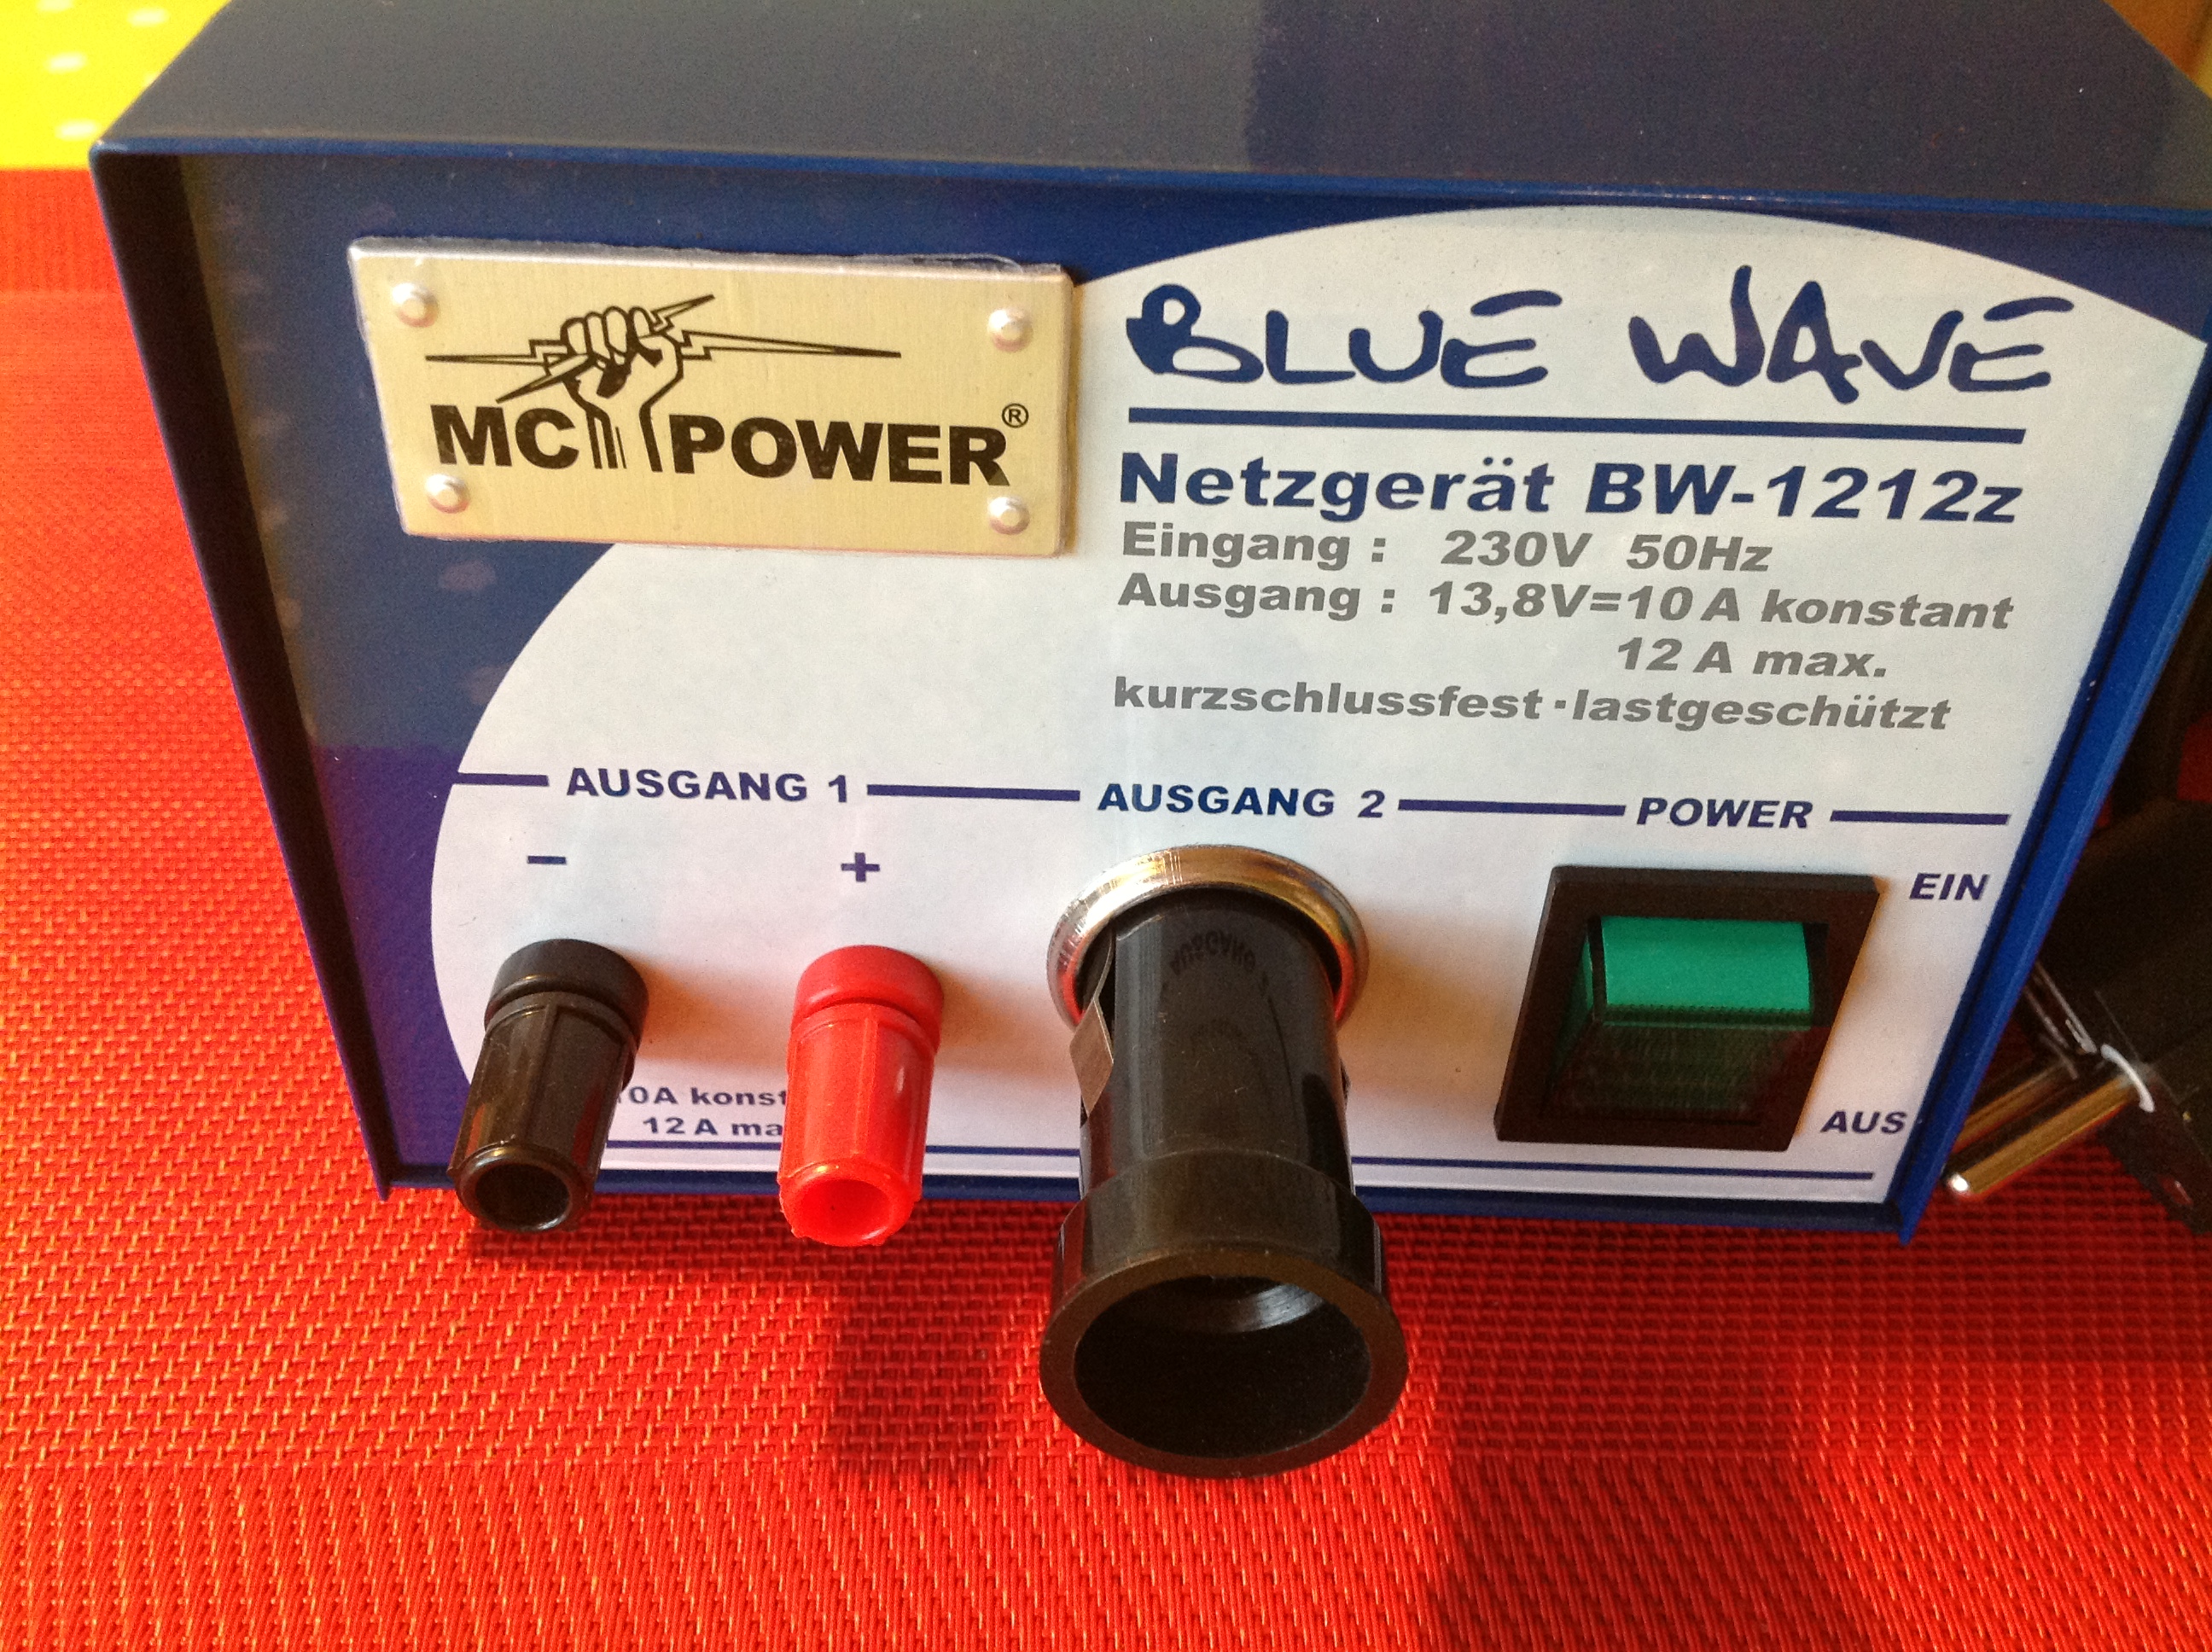 MC Power Blue Wave Netzgerät BW-1212z